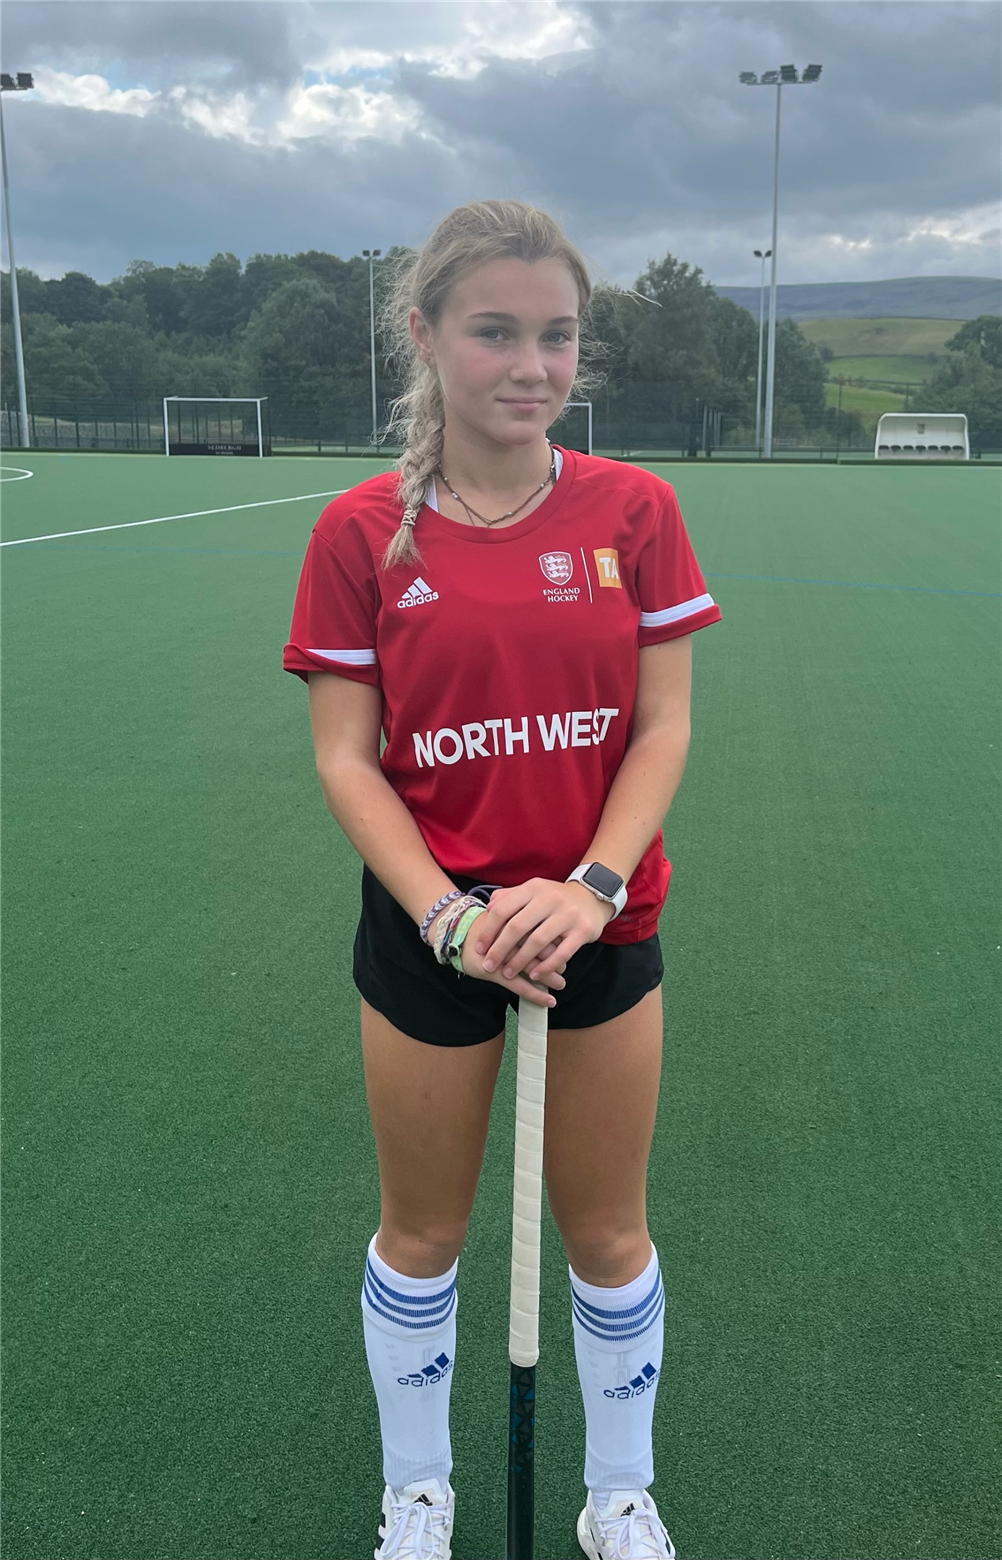 Lisa joins England U16 hockey team training sessions